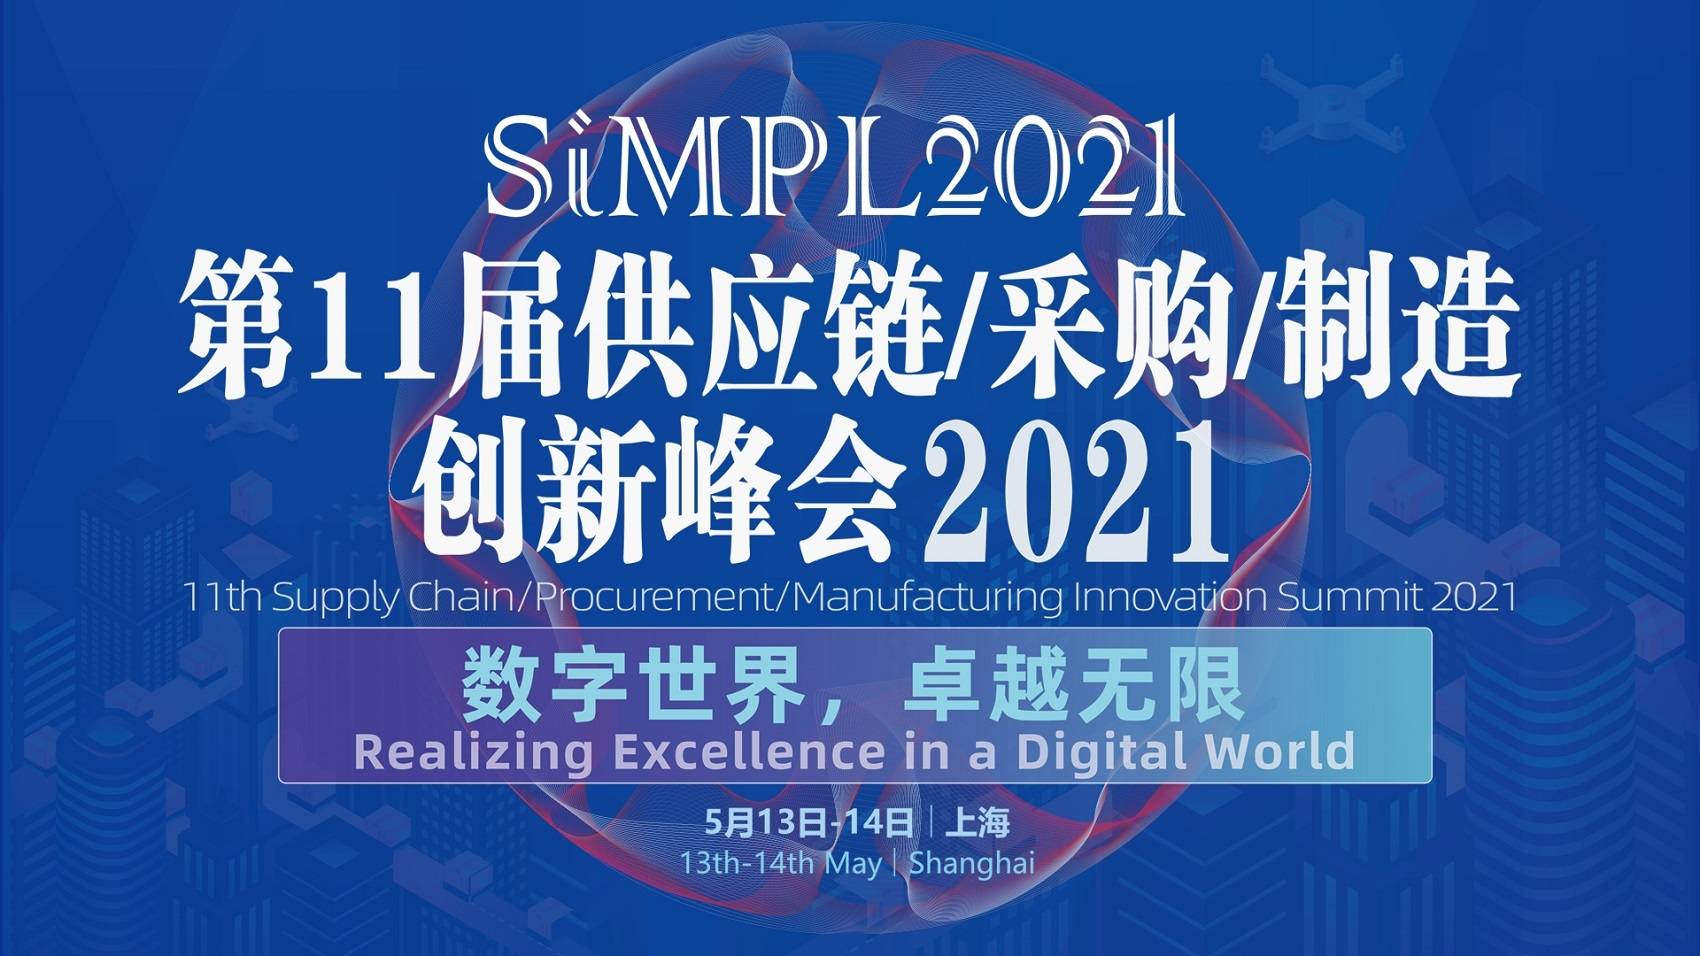 SiMPL2021 第11屆供應鏈物流/采購/制造創新峰會